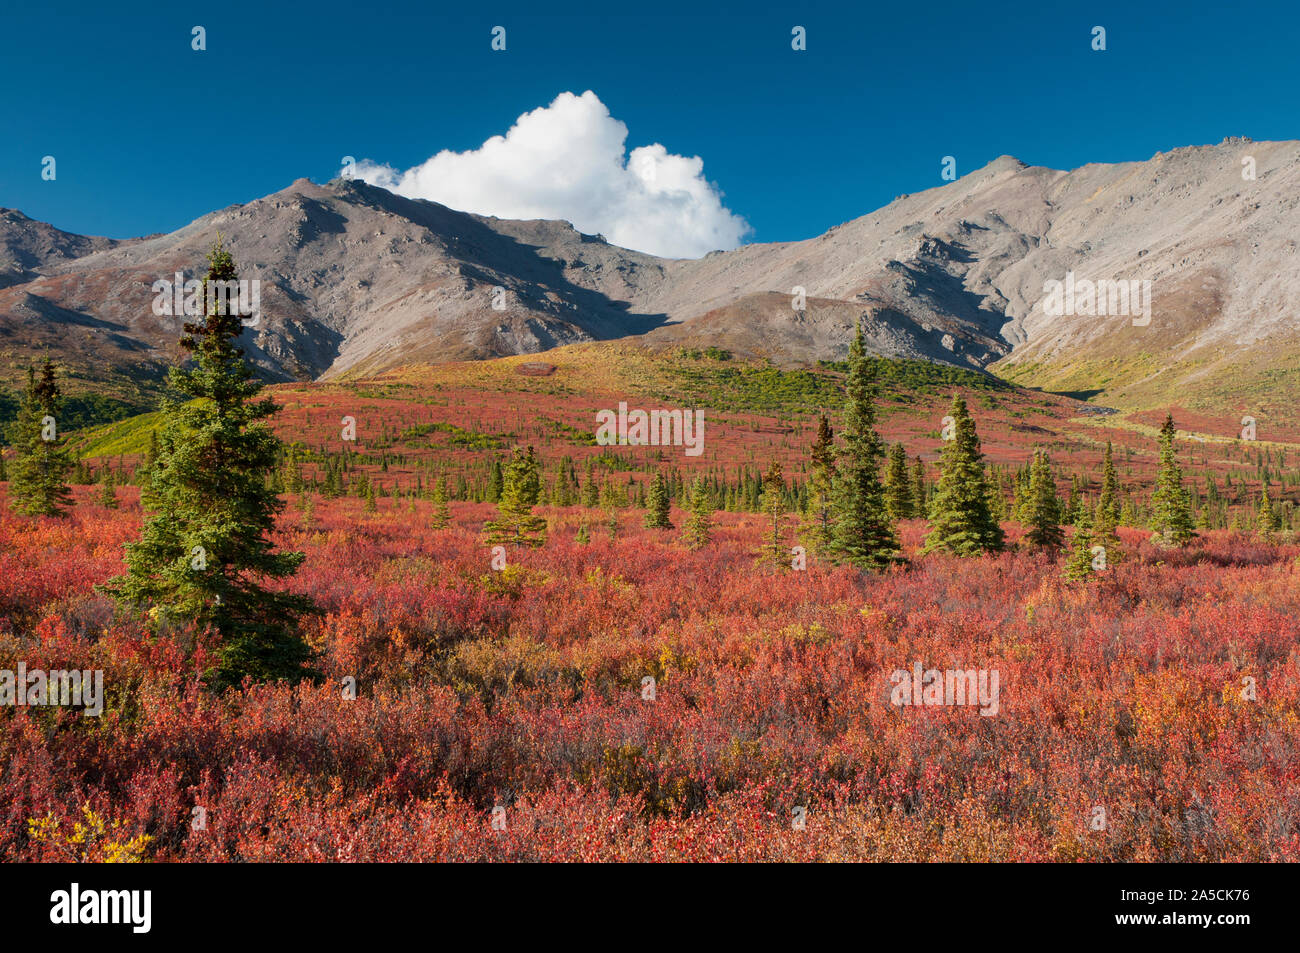 América del Norte; Estados Unidos; Alaska; Alaska Range Mountains; el Parque Nacional Denali; colores de otoño; enano de abedul. Foto de stock